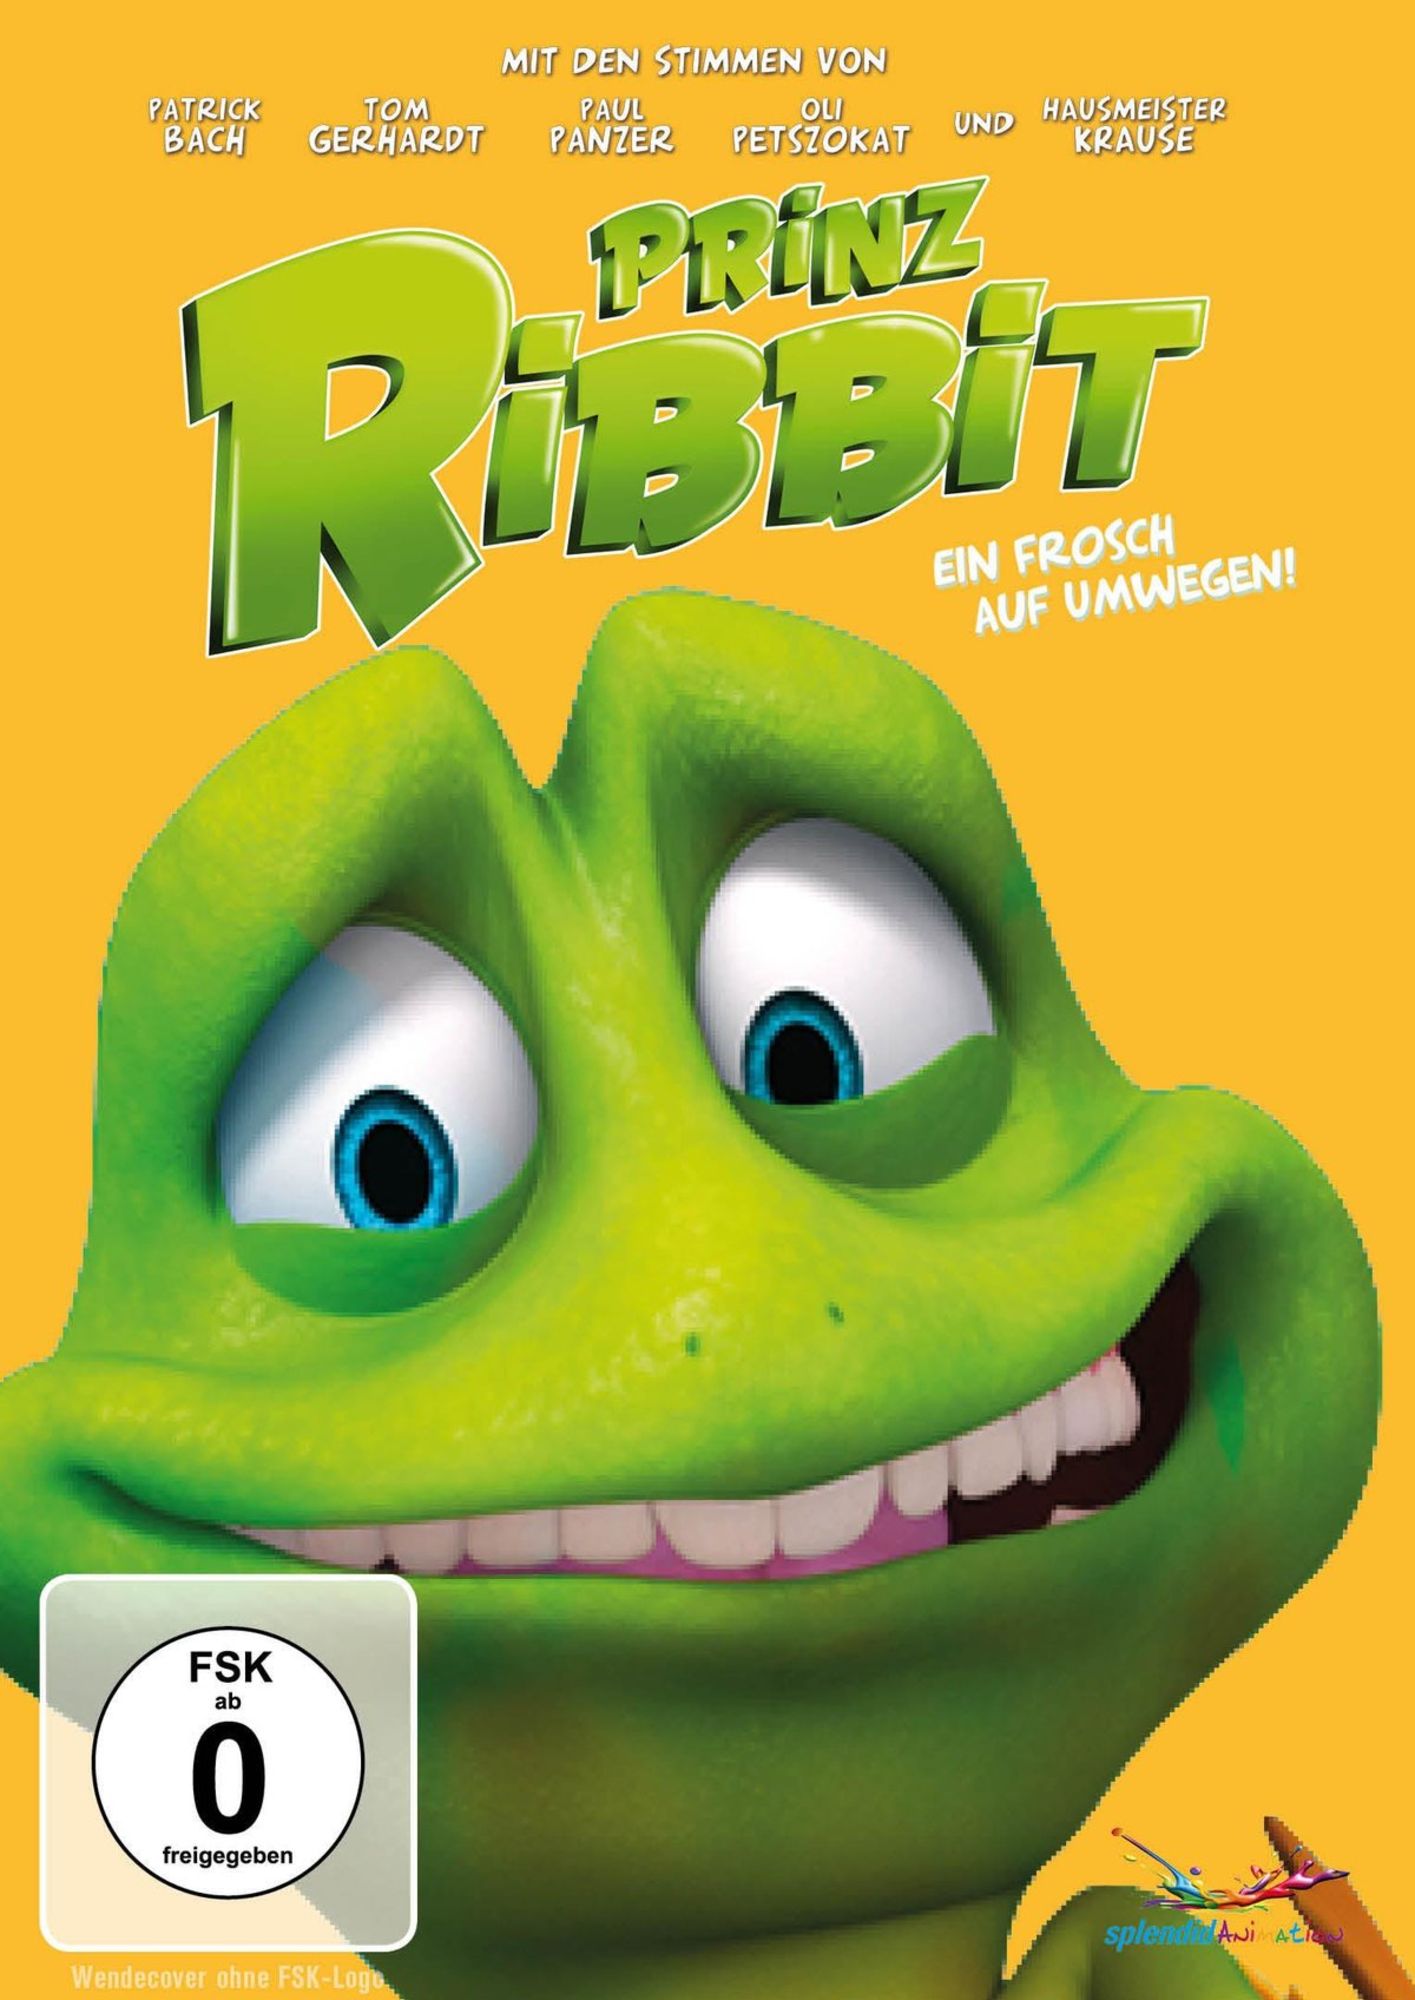 Prinz Ribbit - Ein Frosch auf Umwegen! - for Kids!' von 'Chuck Powers' -  'DVD